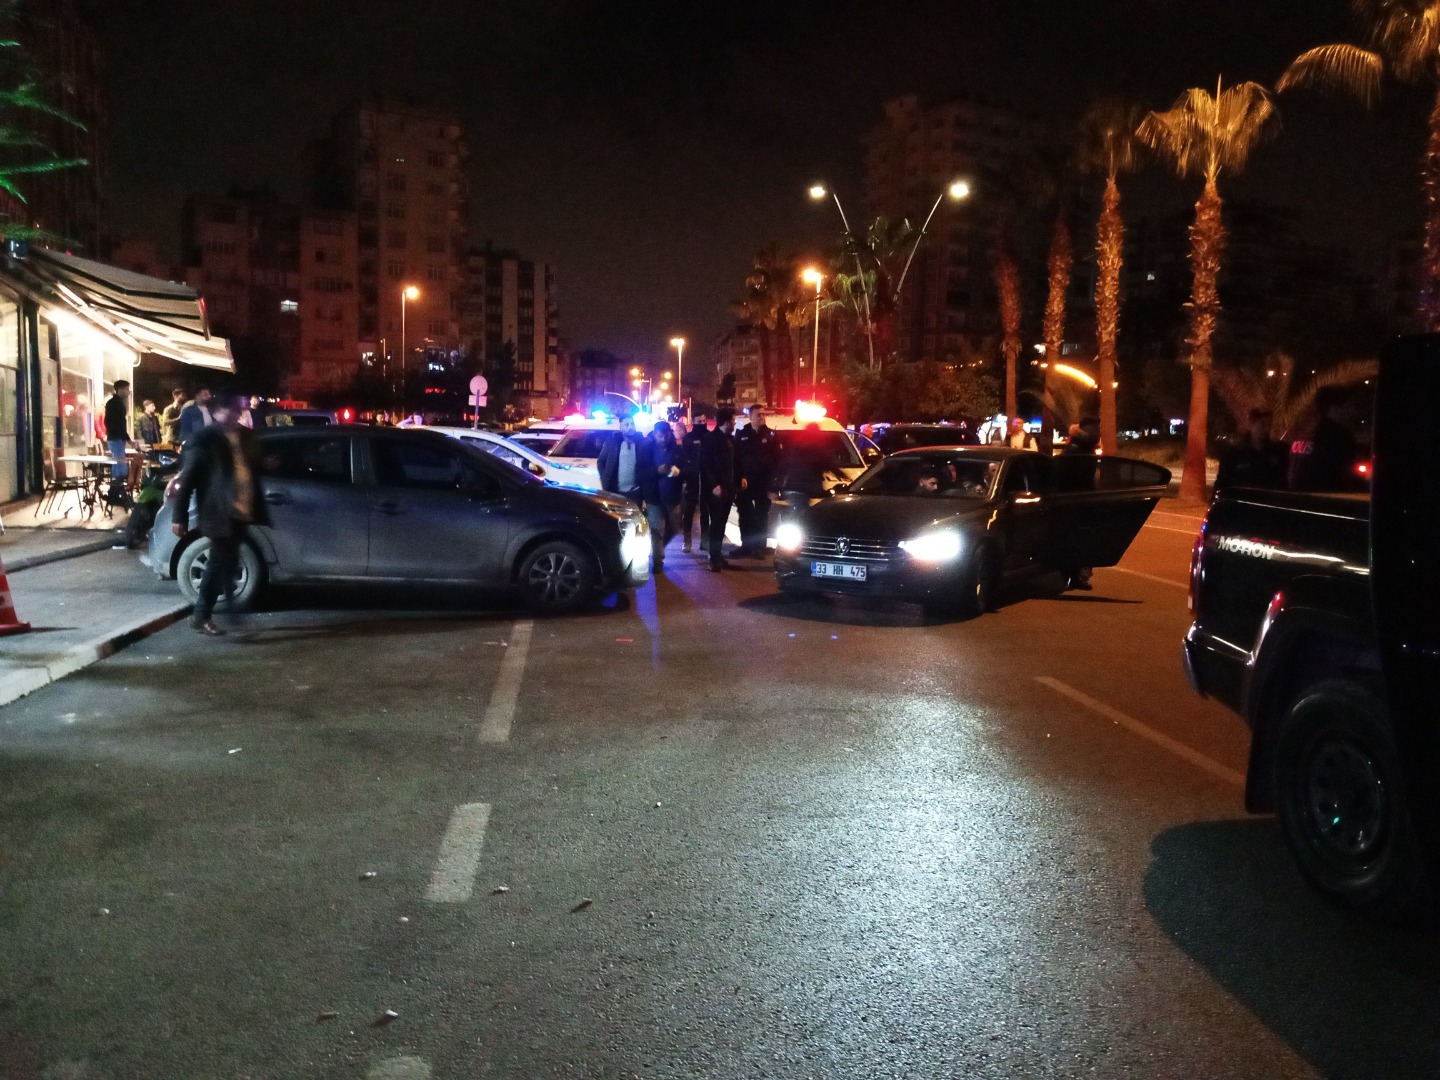 Adana'da gece kulübünde silahlı kavga: 5 yaralı